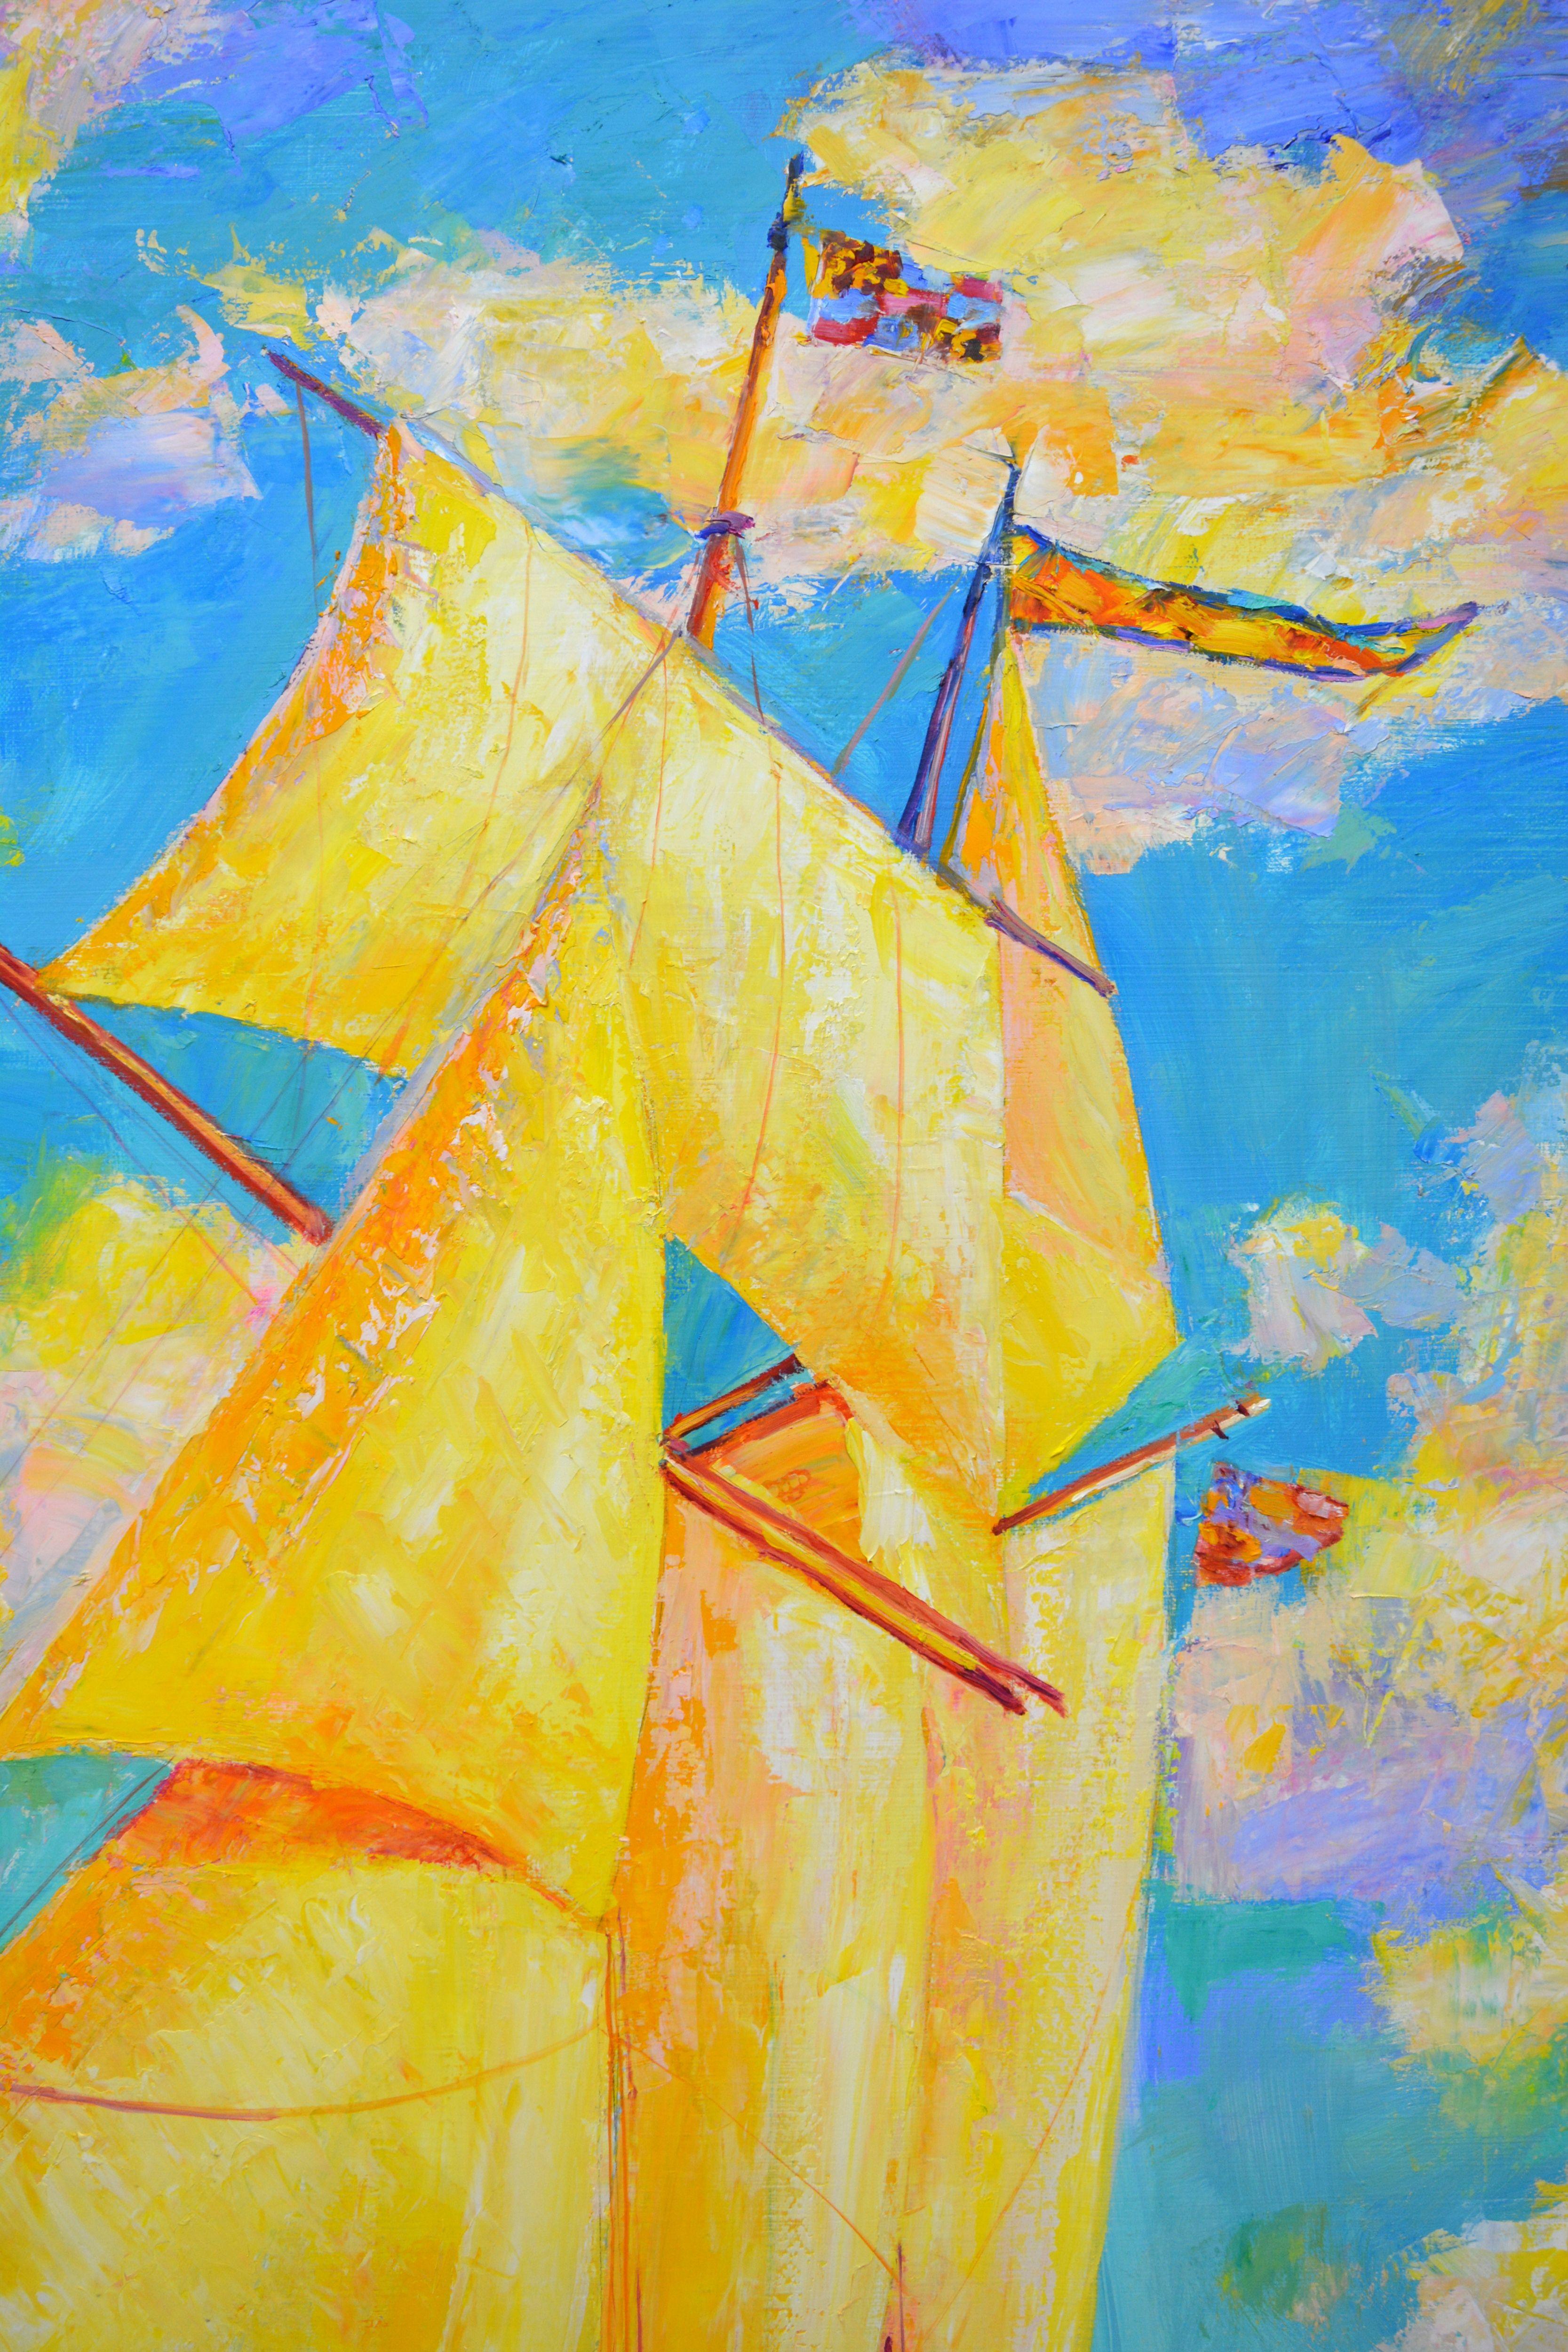 Das Segelboot fährt in der Mittagssonne, die Mannschaft bearbeitet die Segel. Goldenes Licht wird von der Leinwand eines Segels und vorbeiziehenden Wolken reflektiert. Die Arbeit des Messers mit einem Spachtel unterstreicht das sich verändernde